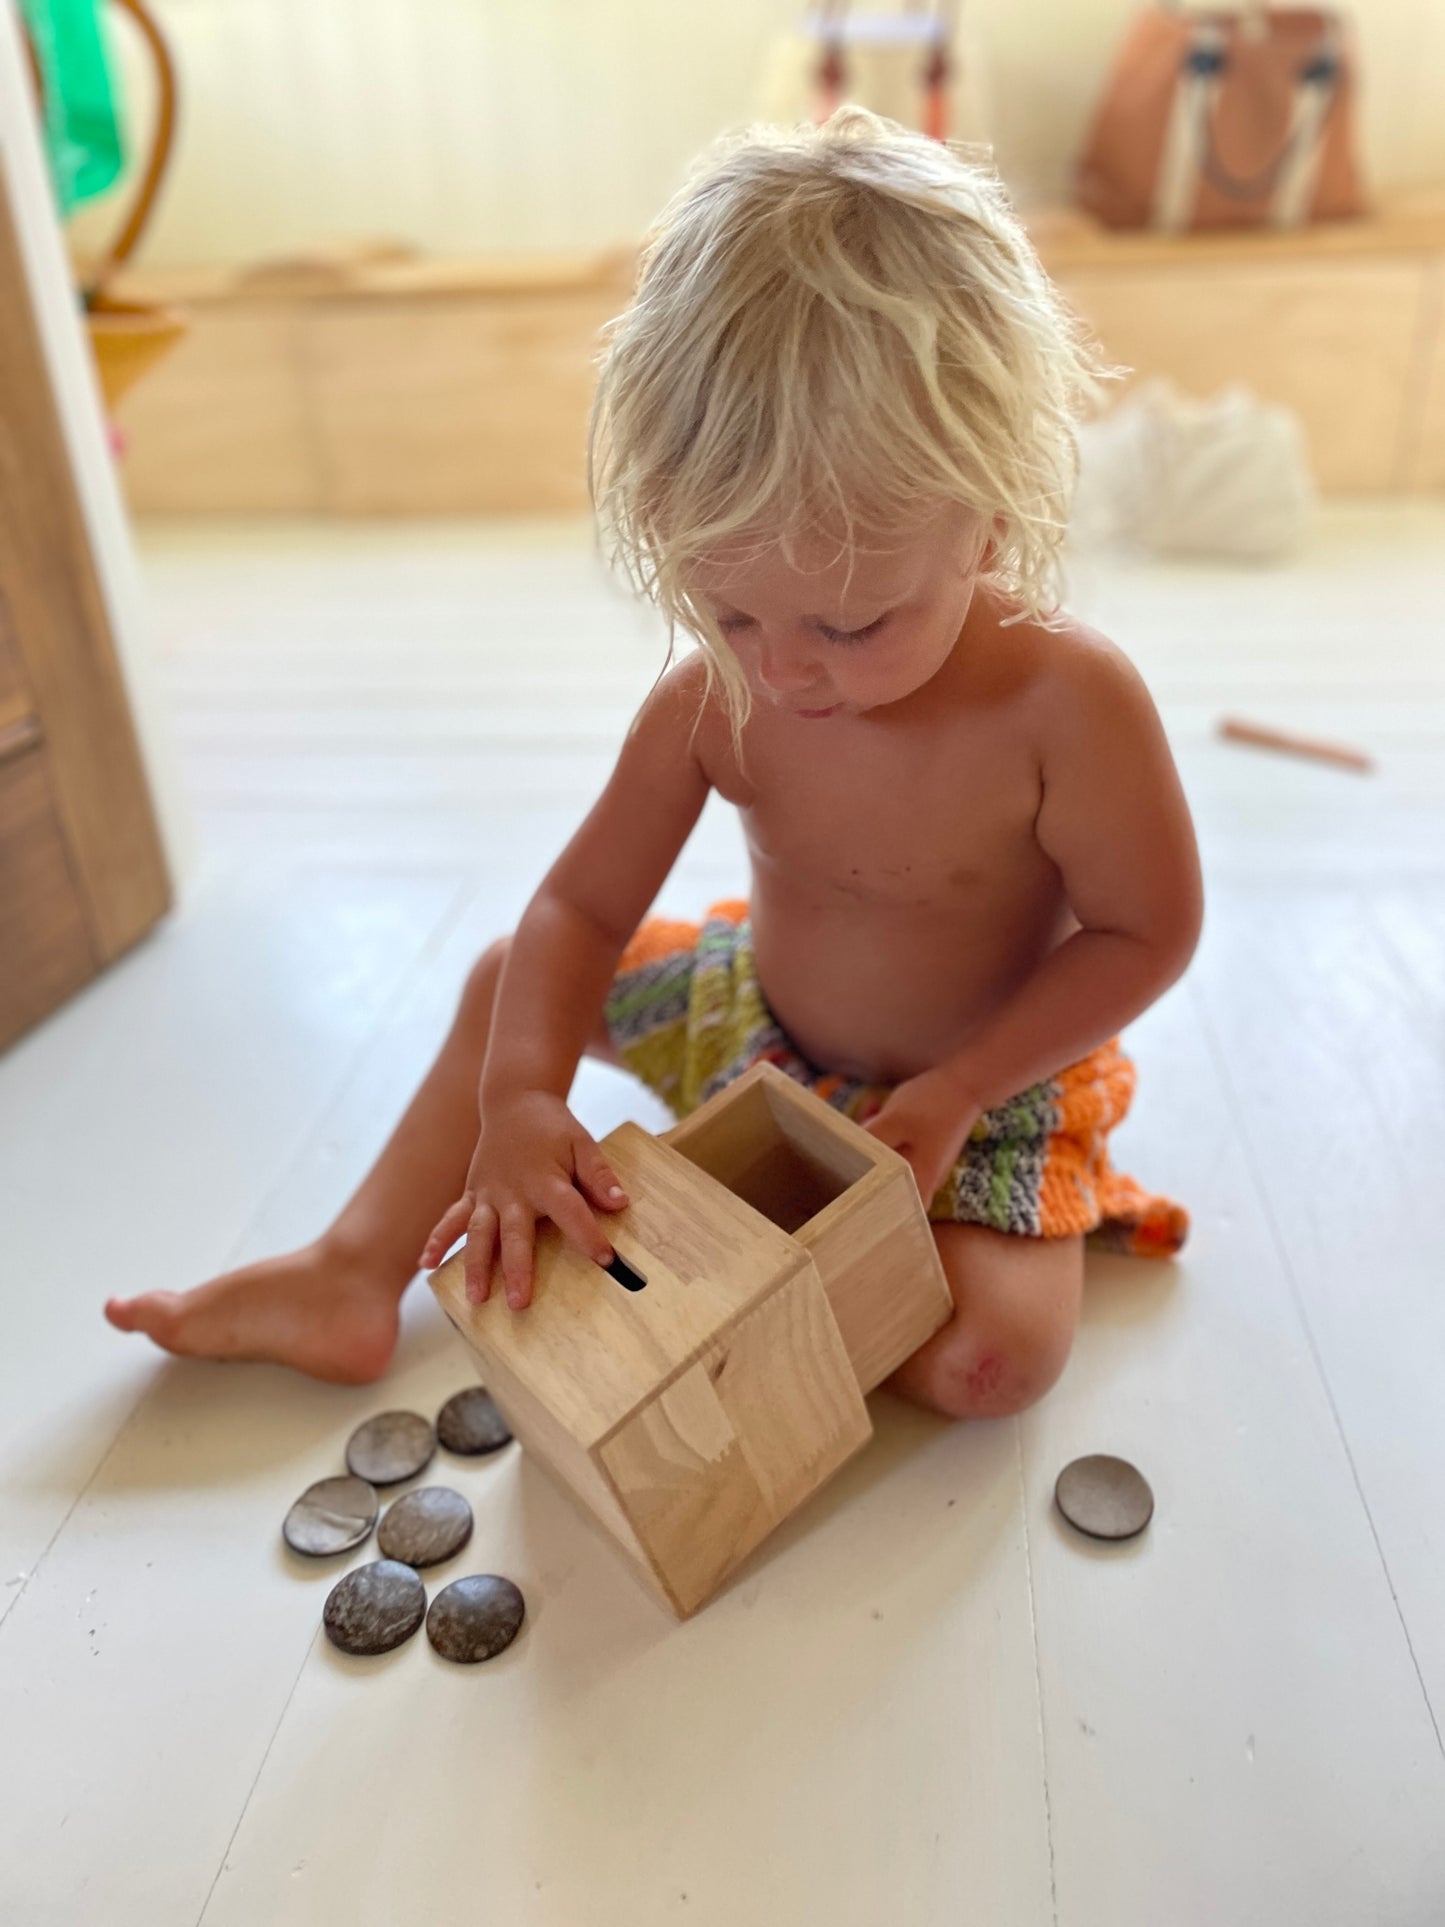 Montessori Discs Post Box